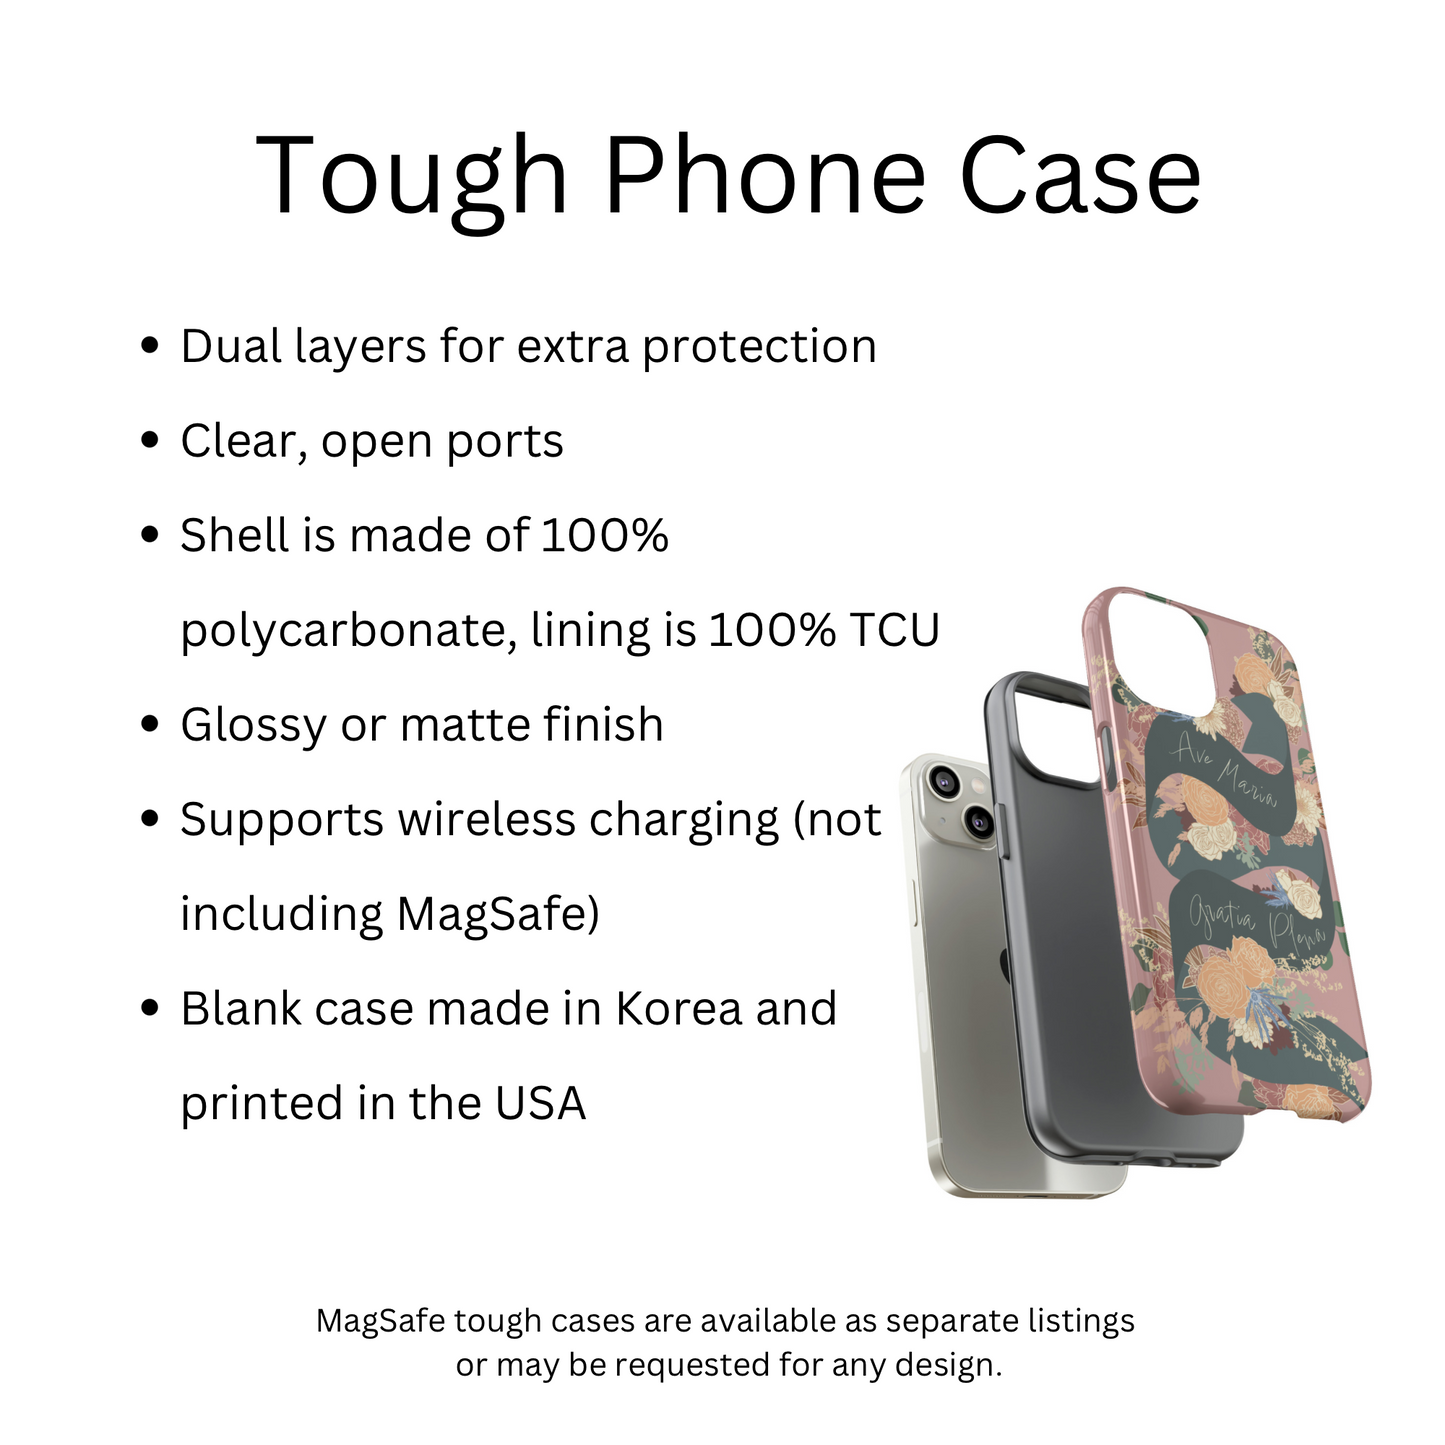 Ave Maria “Tough” Phone Case